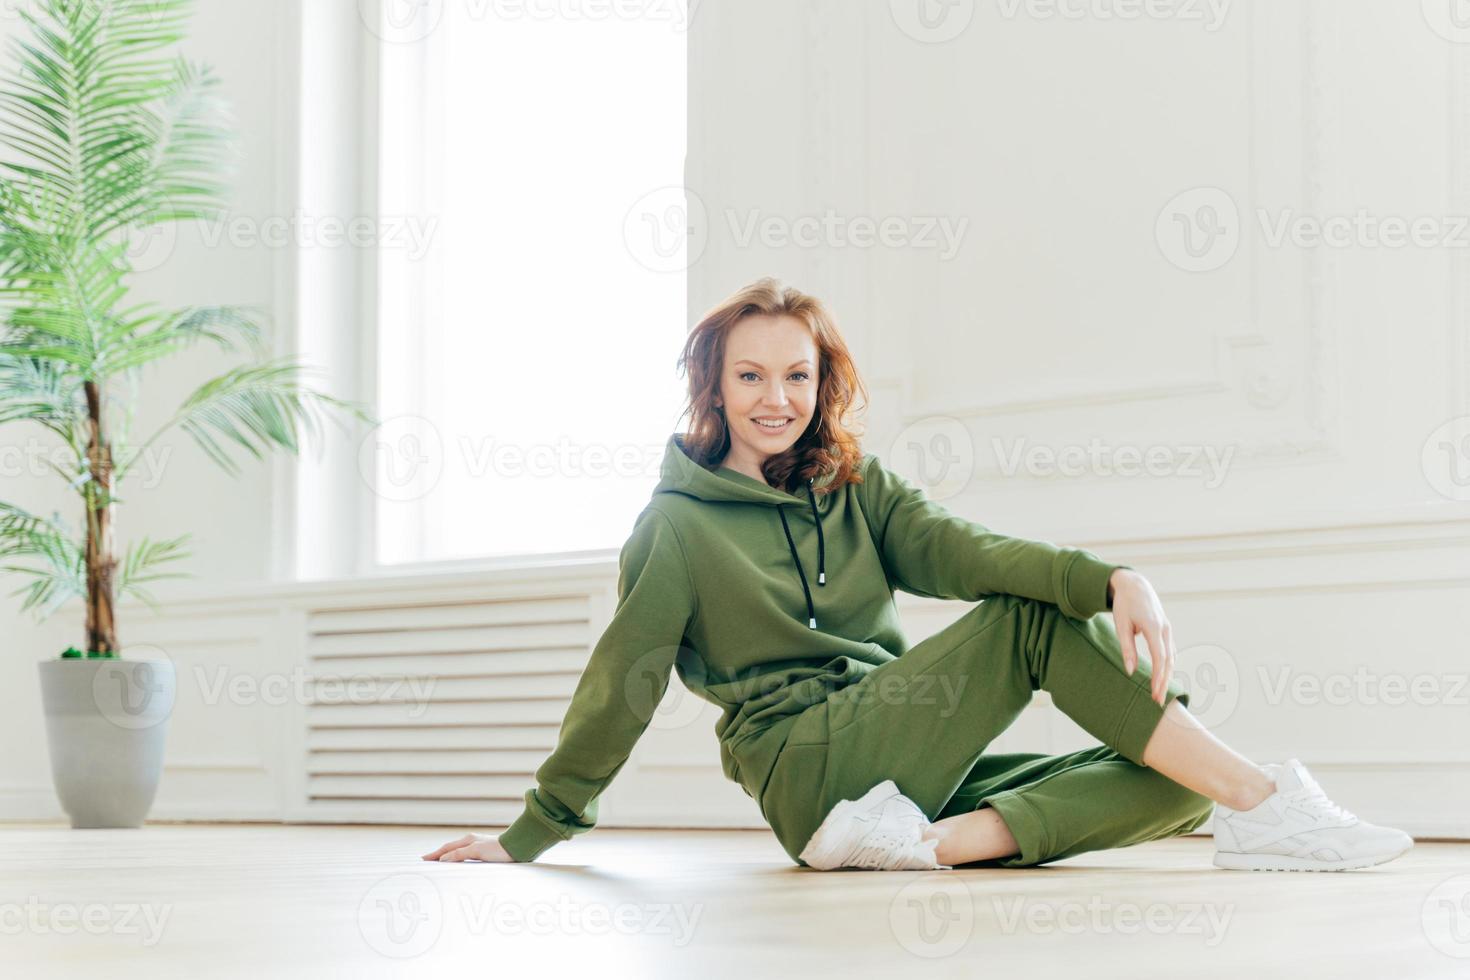 bonne forme physique femme aux cheveux rouges se penche avec la main sur le sol, a le temps de se reposer après les exercices de gymnastique, porte un survêtement vert, pose à l'intérieur, a un corps athlétique. personnes, sport, concept de style de vie photo